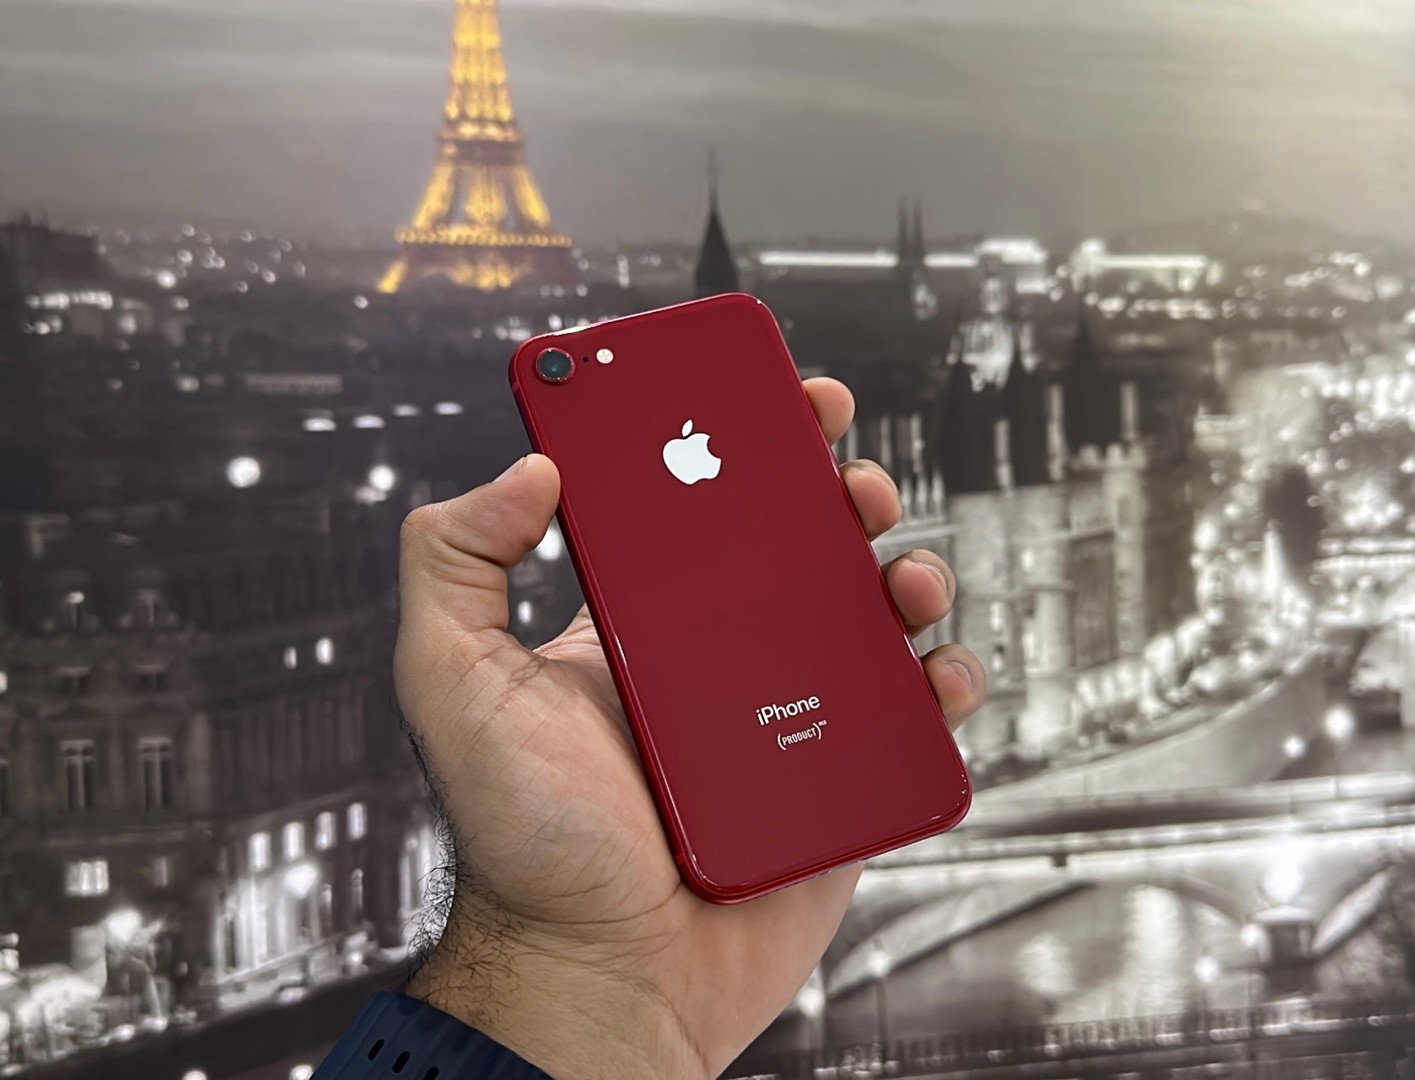 celulares y tabletas - Vendo iPhone 8 64GB Red (Product )Como Nuevo, Desbloqueado,Garantía, $ 7,900 NEG